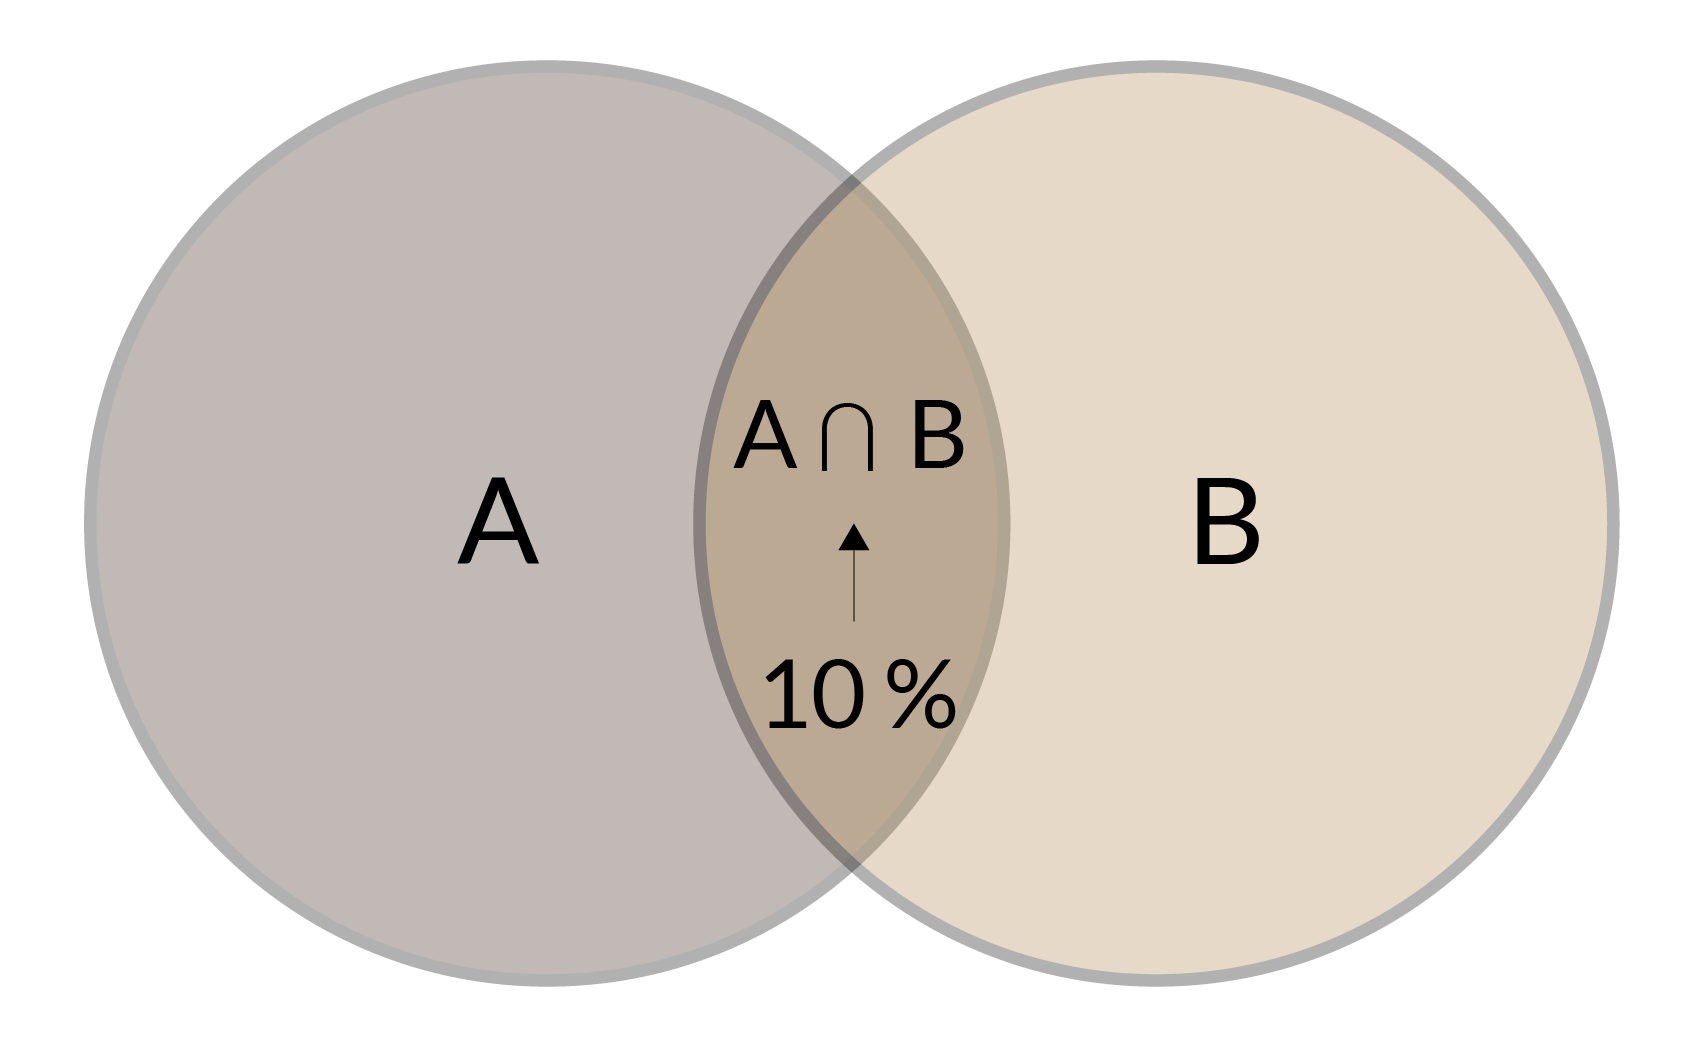 Diagrama de Venn. En dos círculos parcialmente superpuestos, A y B, el espacio de superposición se da en la intersección entre A ∩ B, donde se determina la probabilidad de que el sujeto use loción o desodorante.